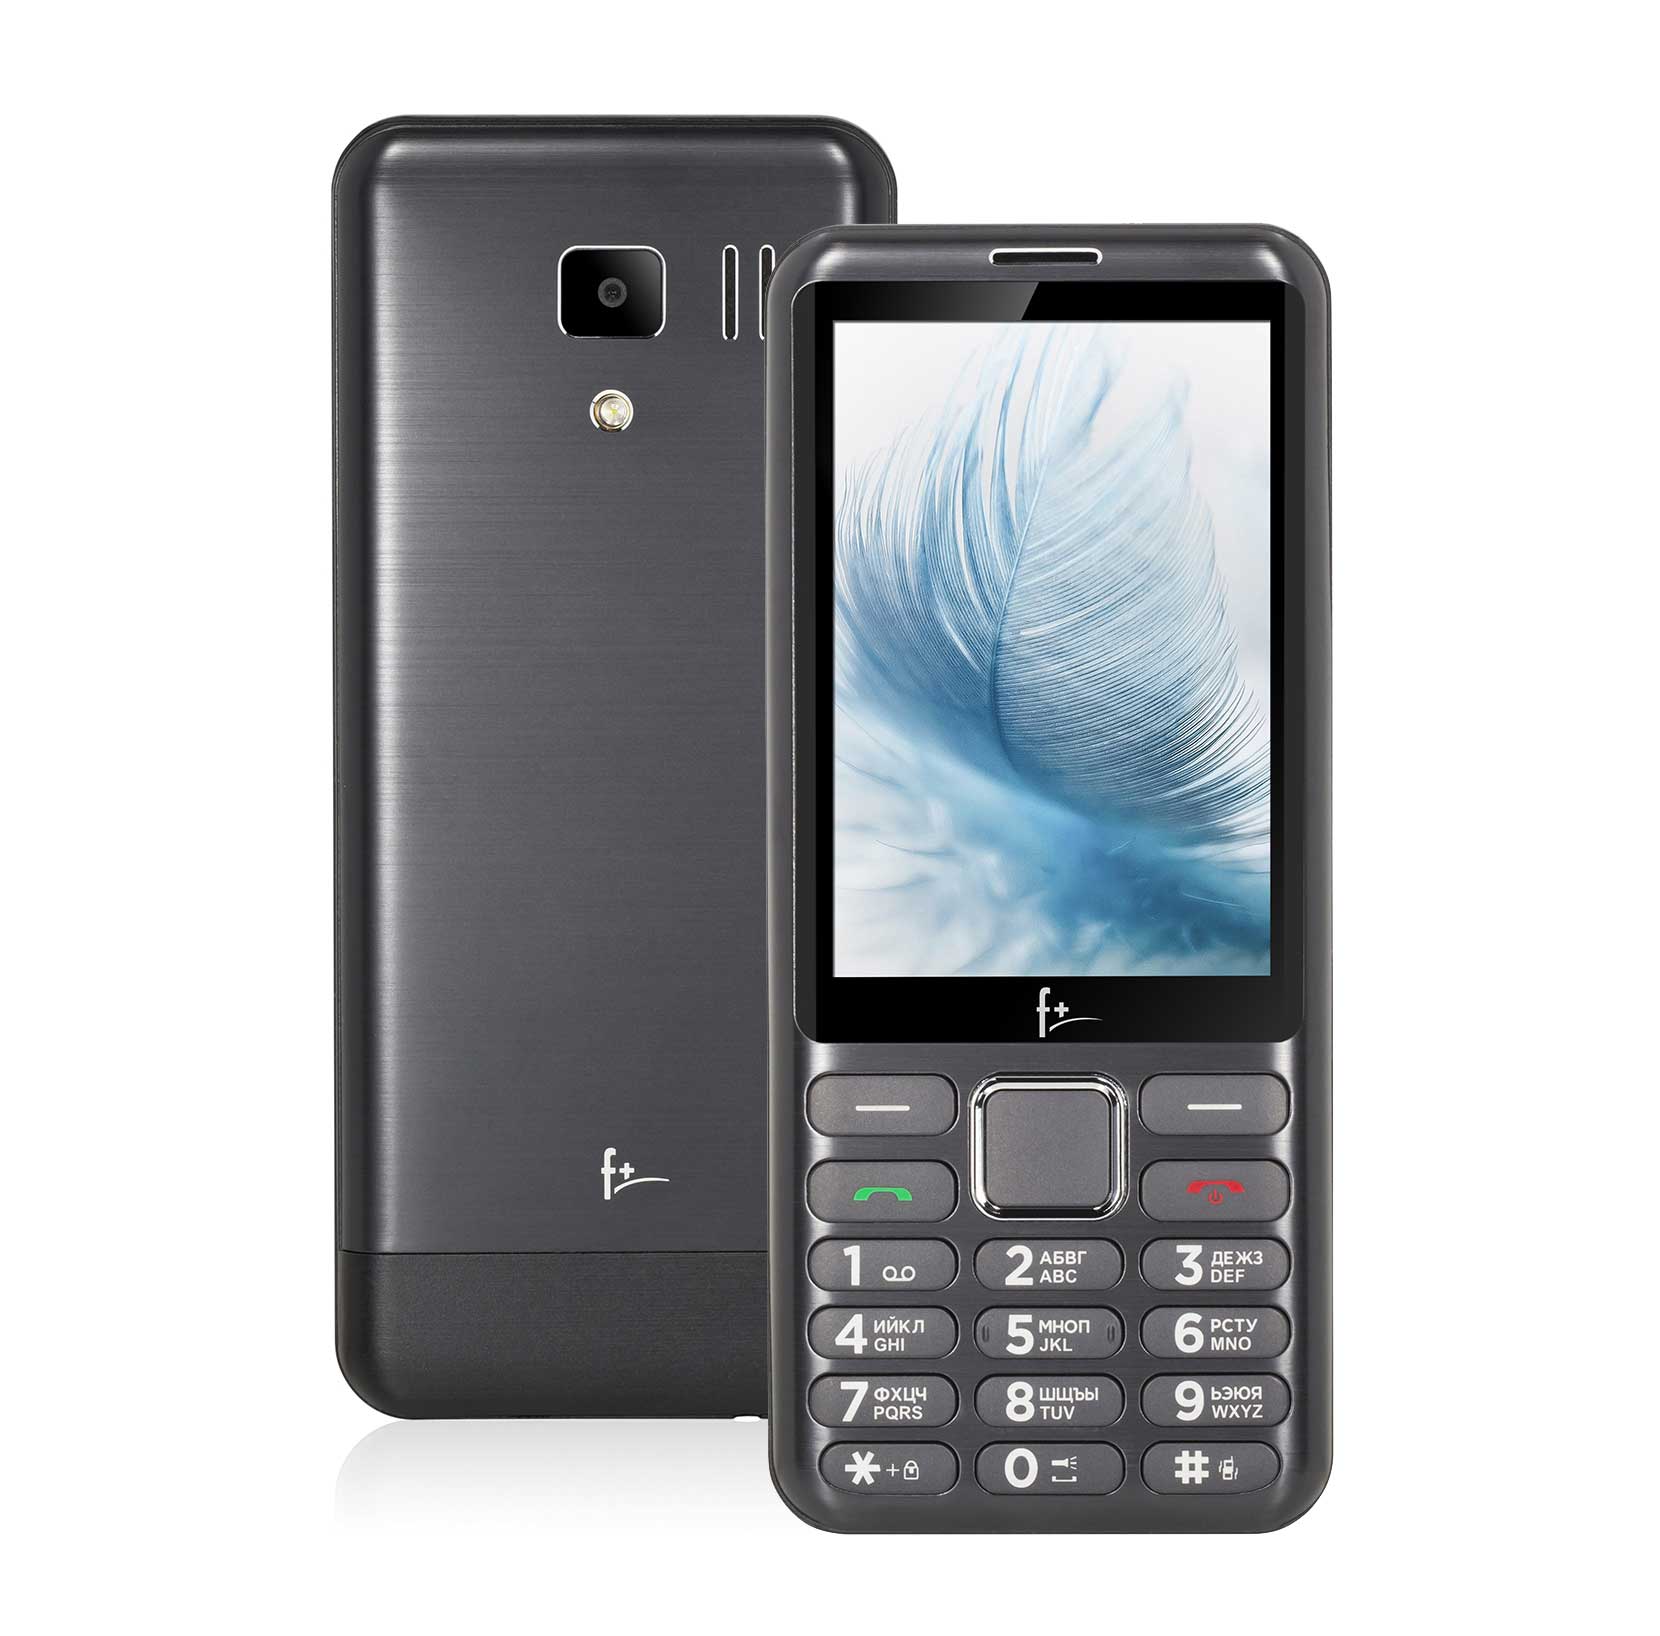 Мобильный телефон F+ S350 Dark Grey телефон f b280 dark grey